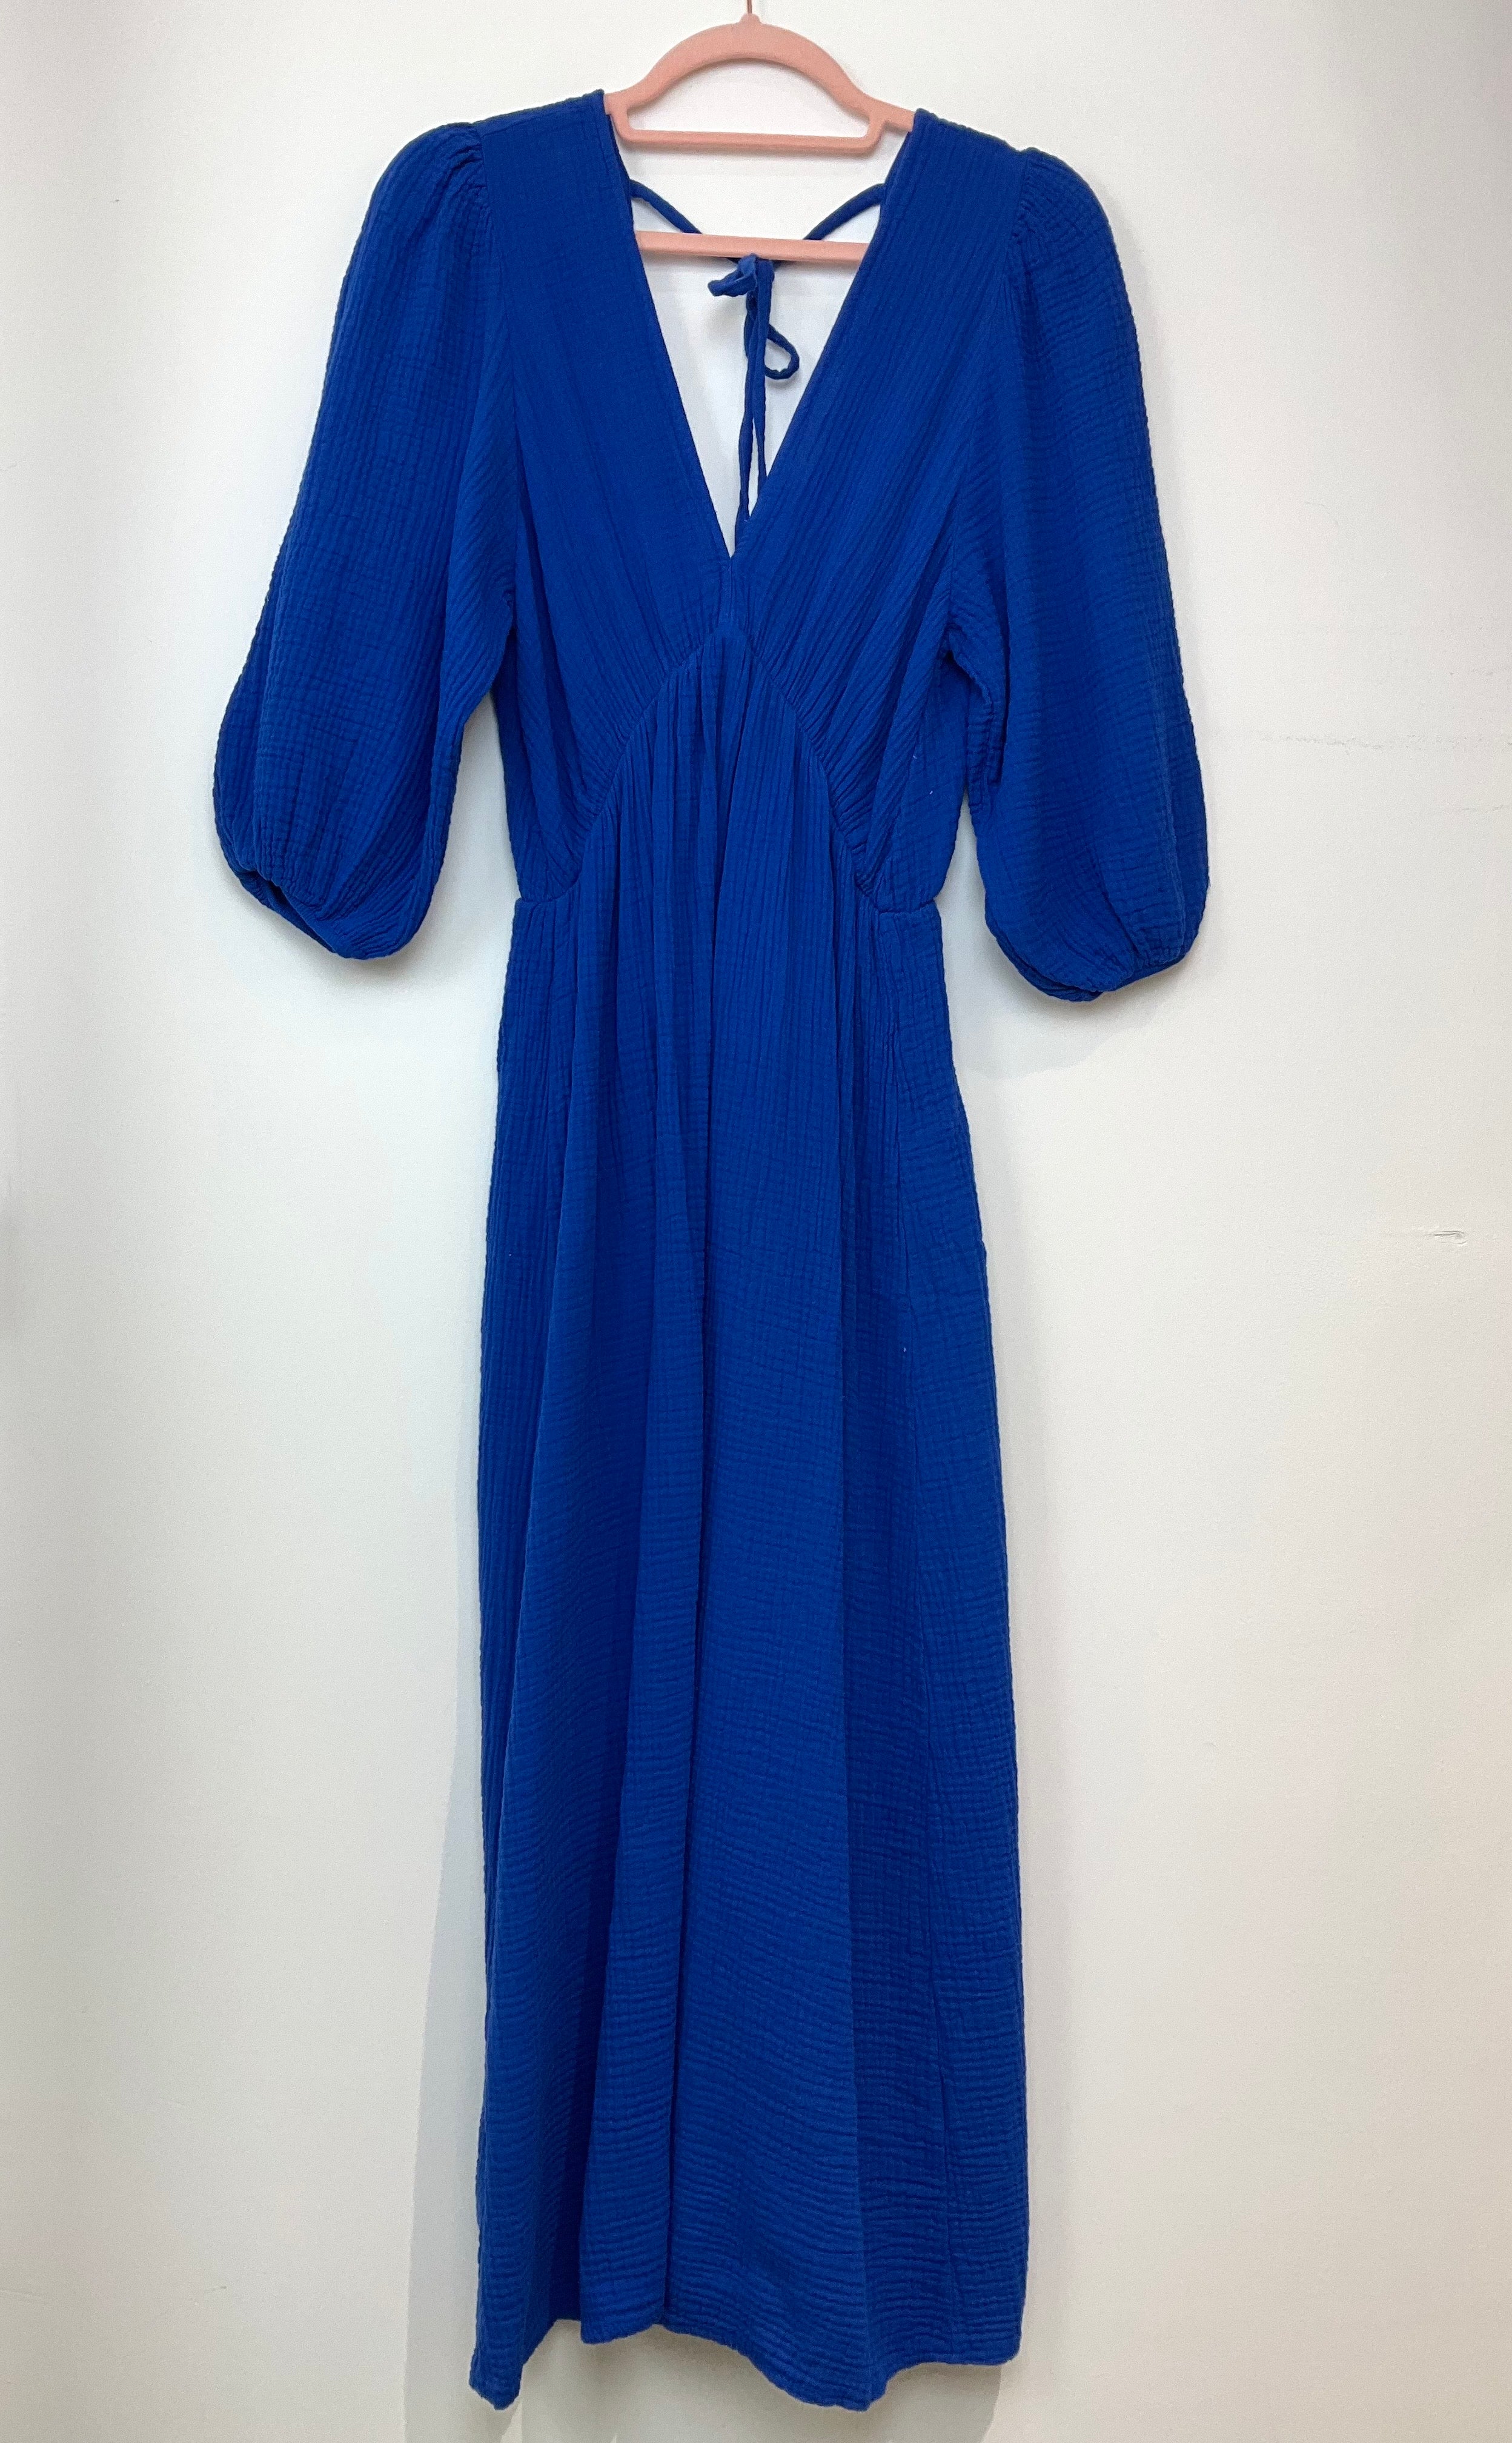 Blue faye dress